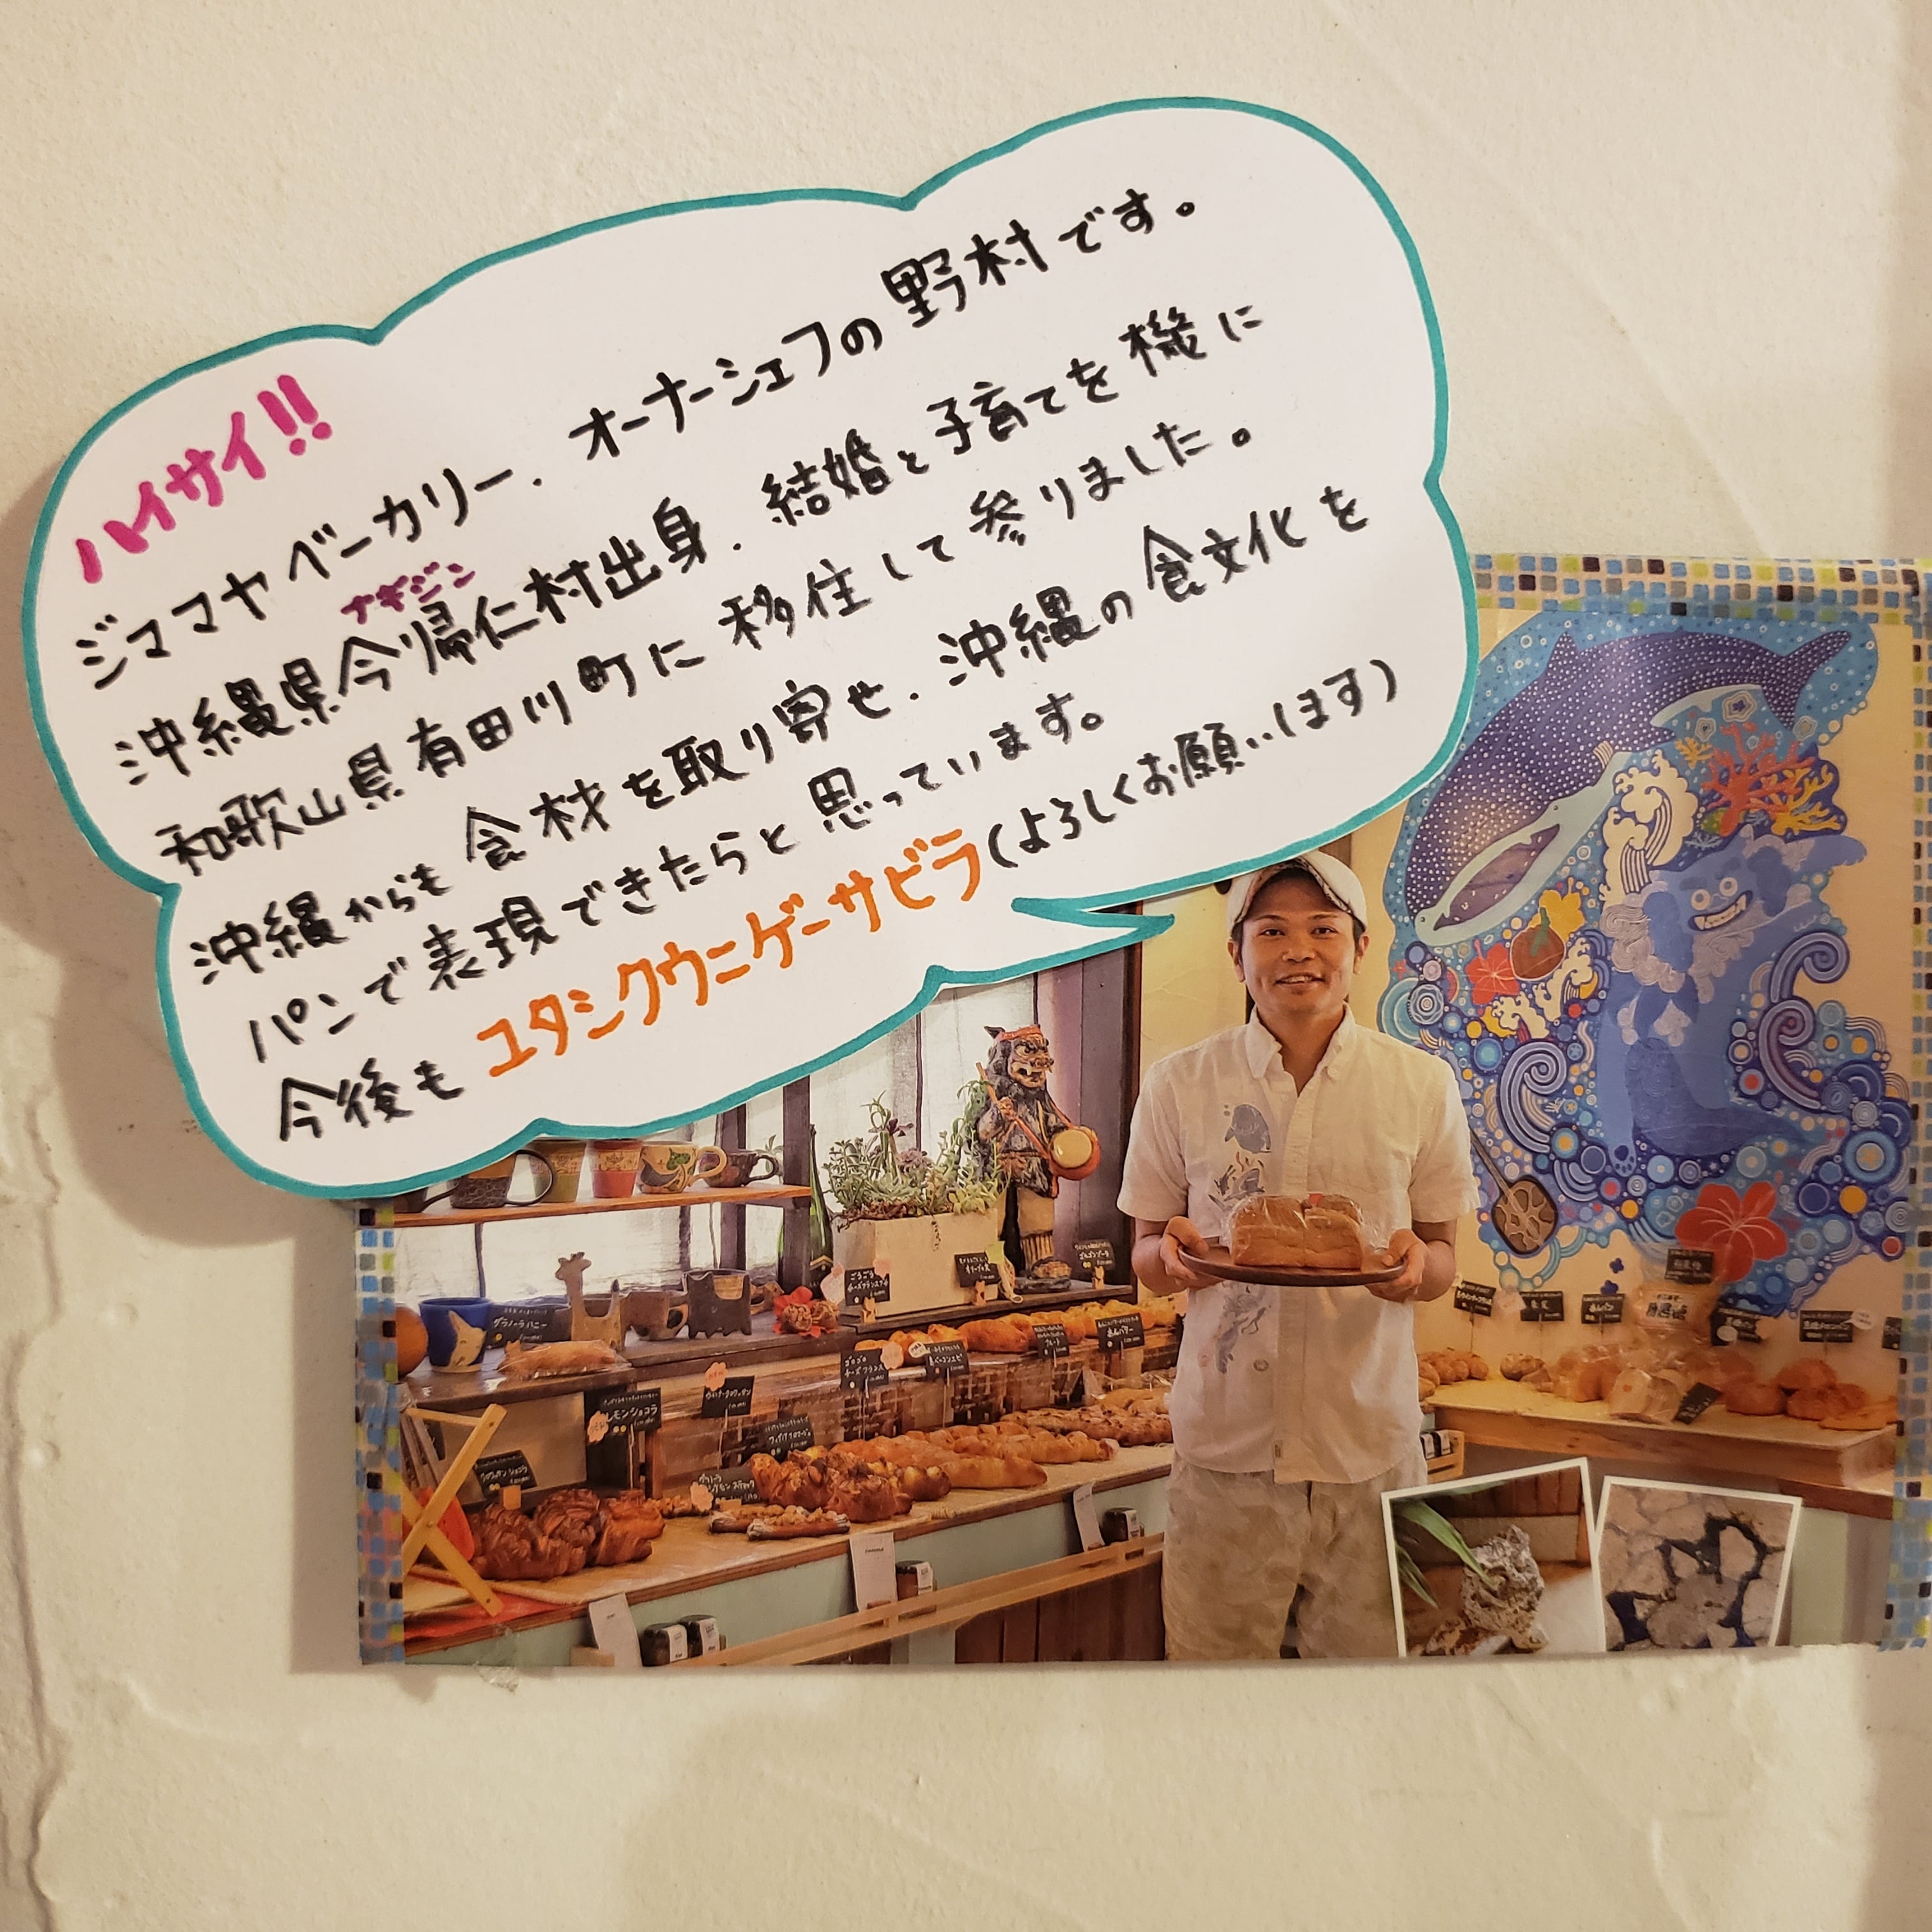 「わけあり」沖縄の食文化を取り入れた、ジママヤベーカリーのロスパンセット60サイズ